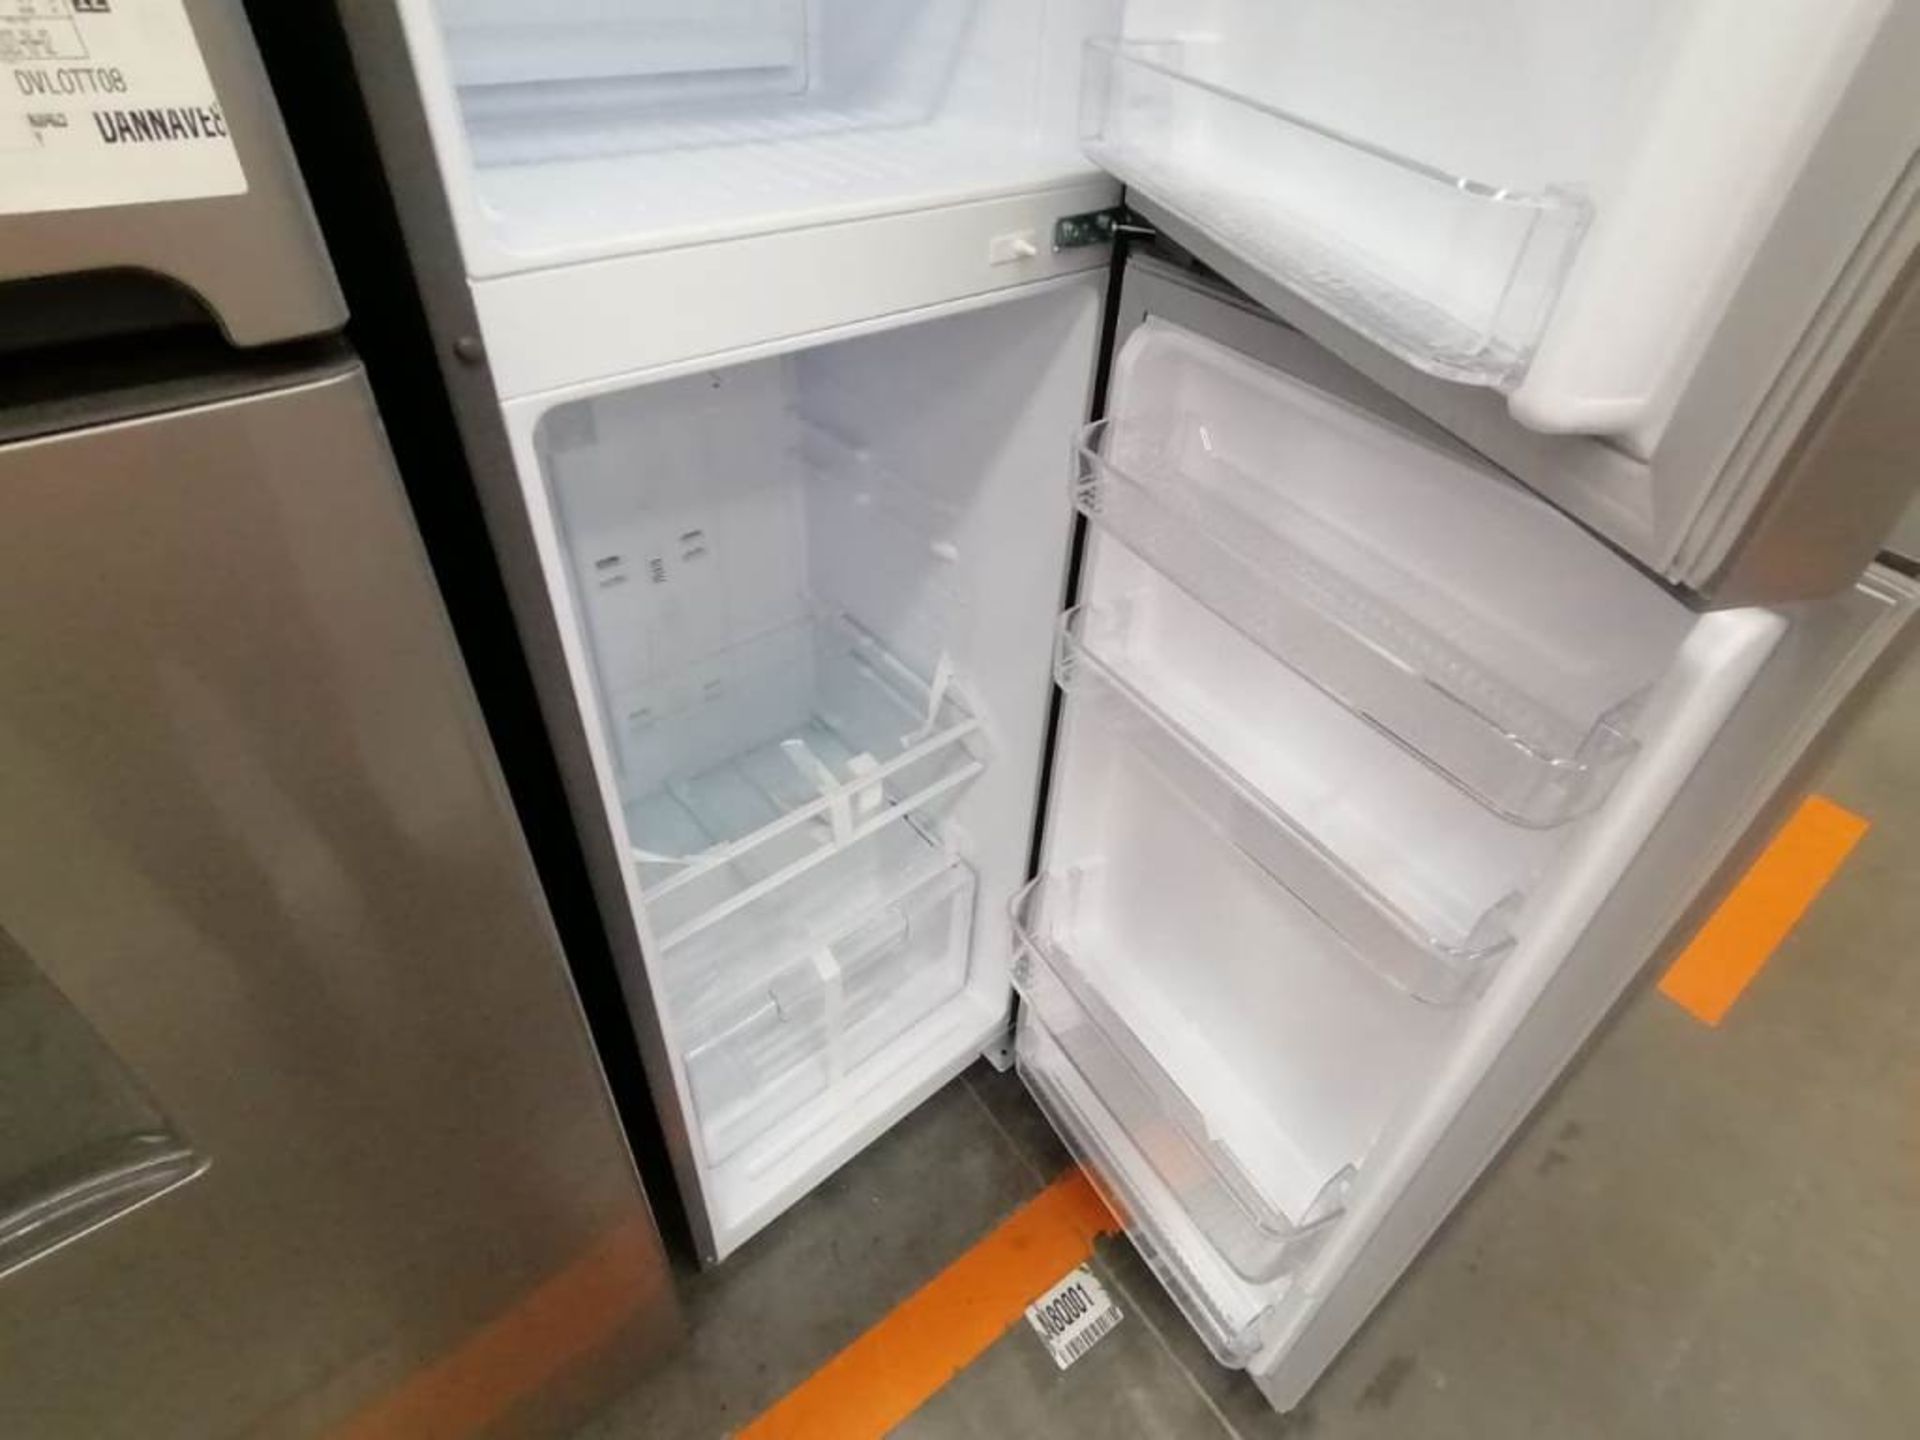 Lote de 2 Refrigeradores, Contiene 1 Refrigerador Marca Winia, Color Gris, Dos Puertas, Despachador - Image 10 of 13